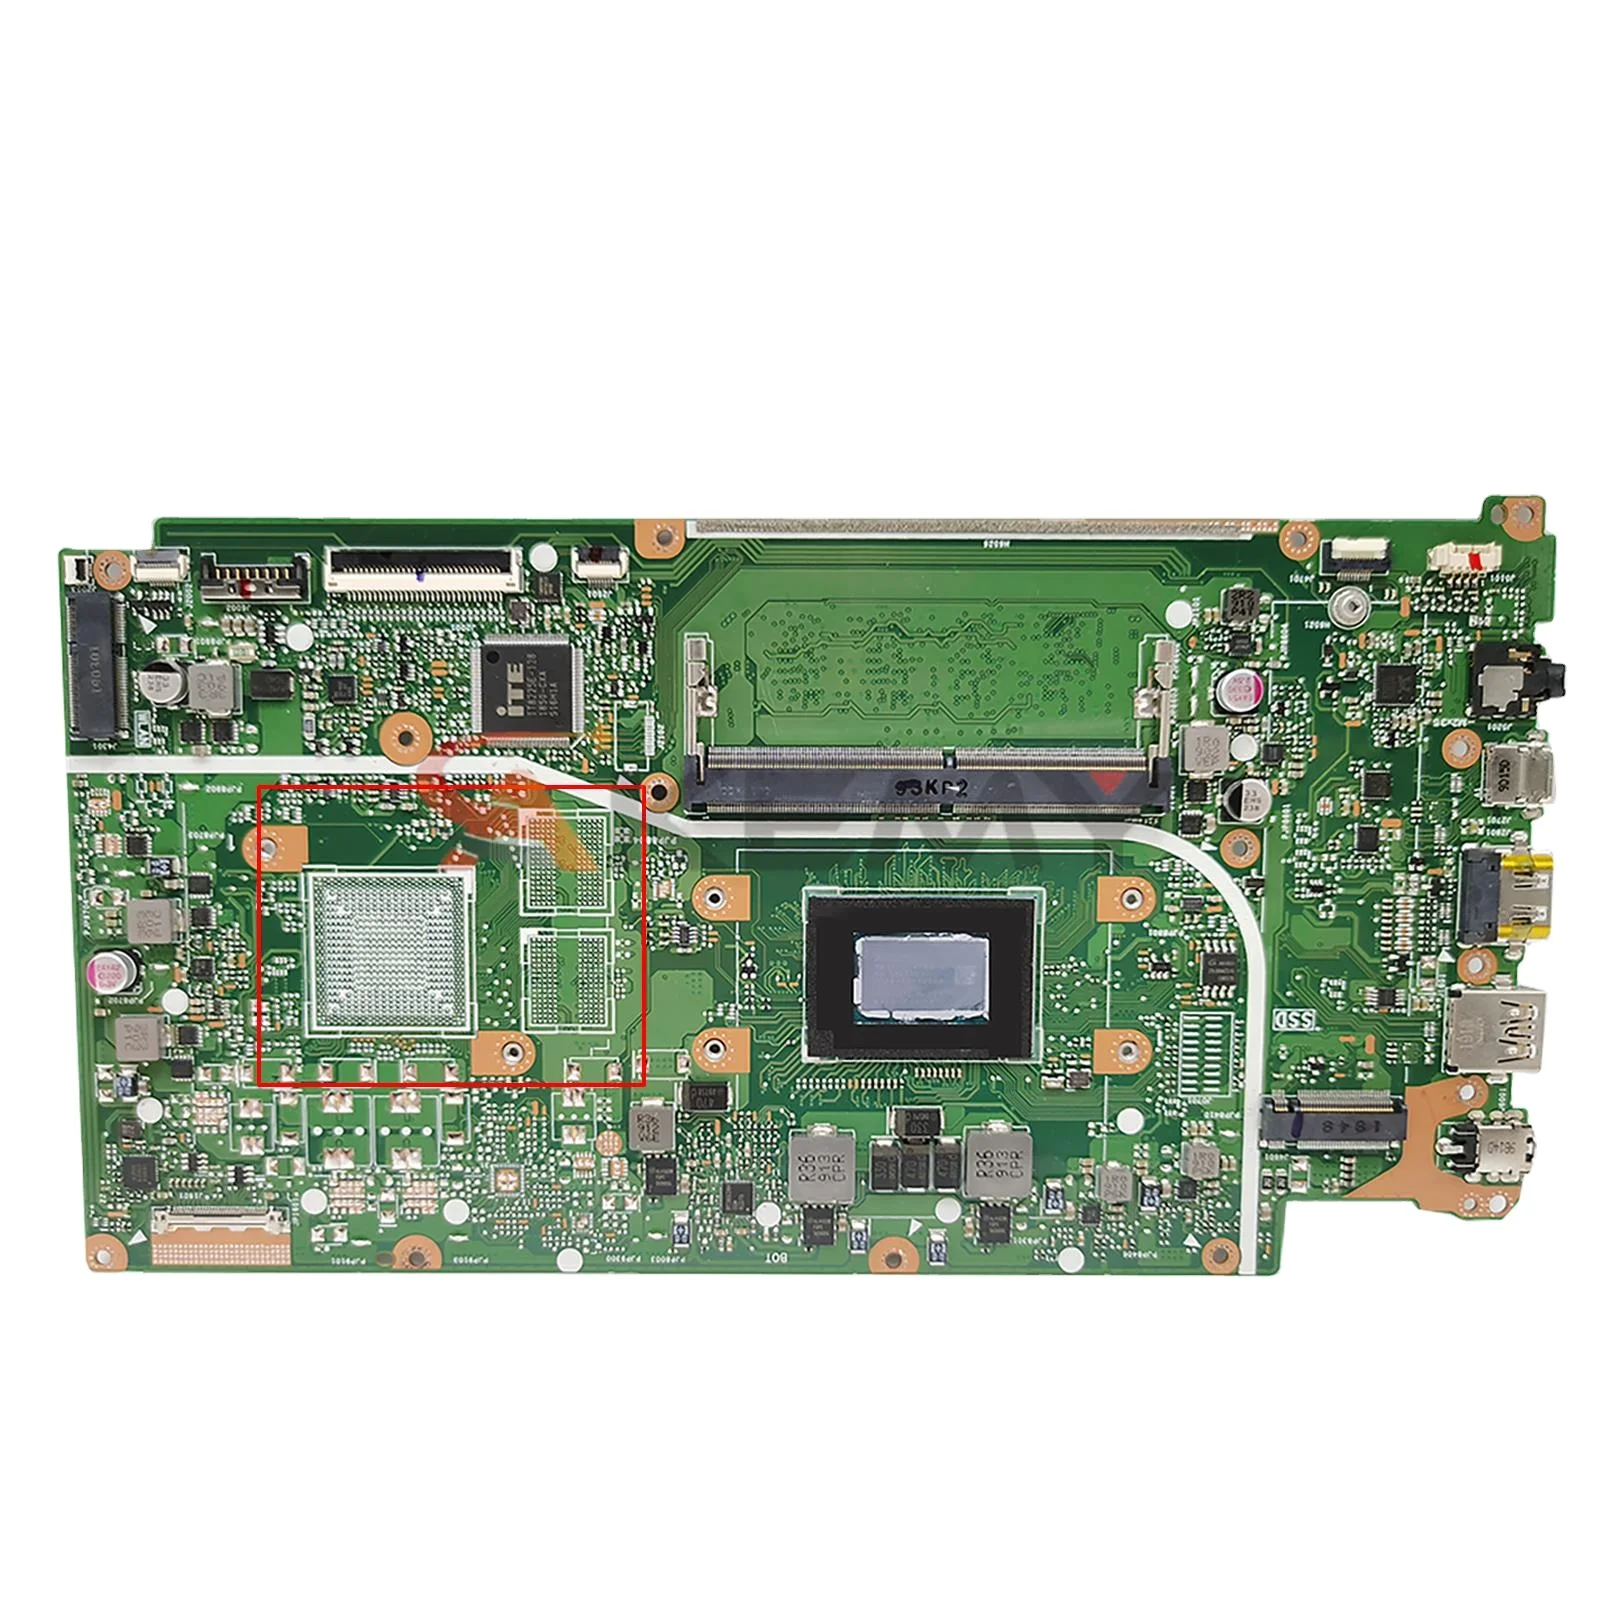 

X512DA Laptop Motherboard For ASUS F512DA X512D F512D X512DK Laptop Motherboard Mainboard 4GB RAM AMD R3-2300U R5-3500U R7-3700U